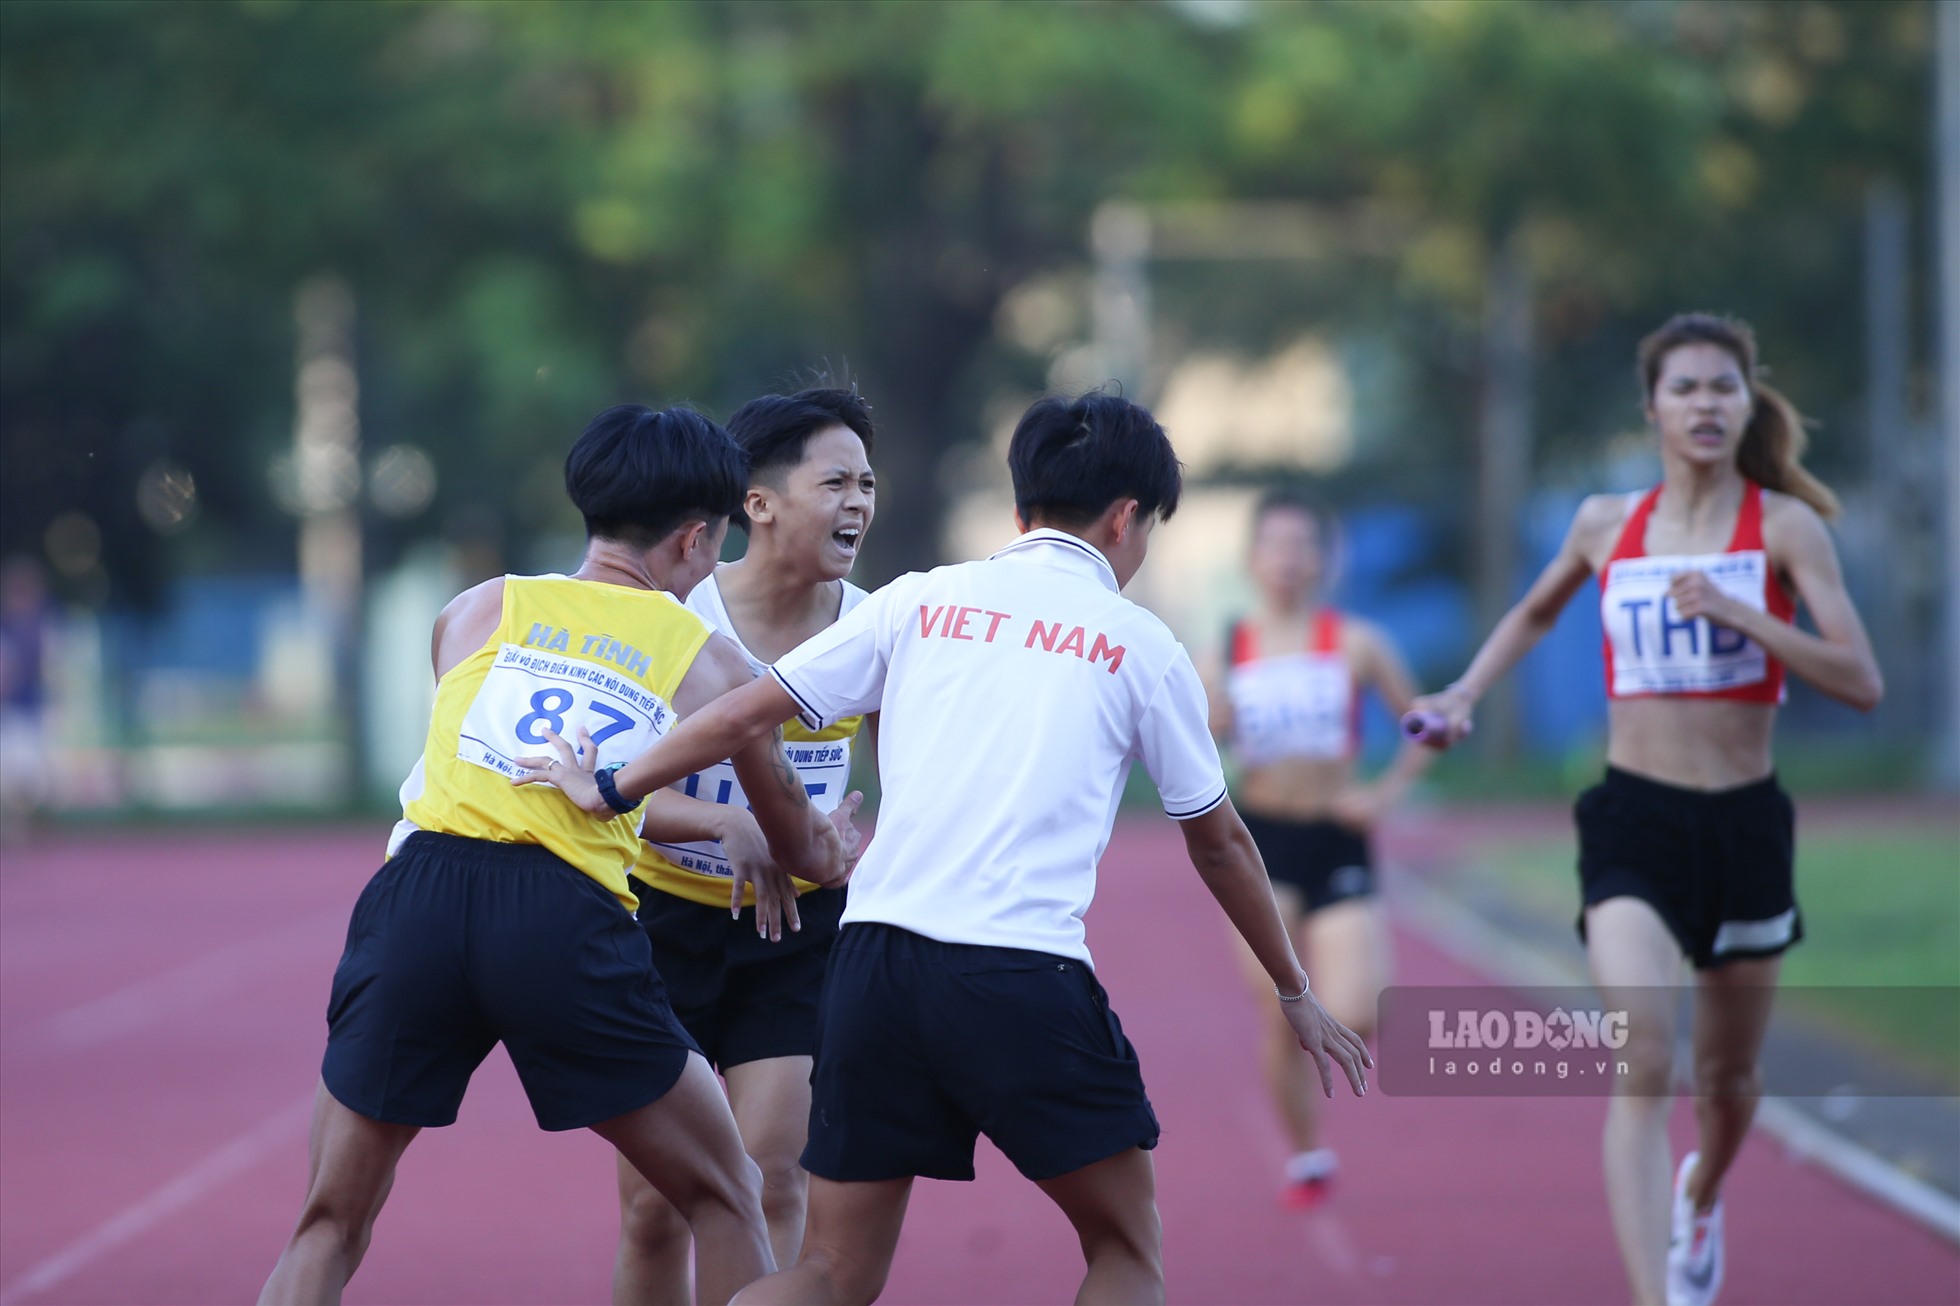 Niềm vui của đội Hà Tĩnh khi giành huy chương vàng, đây cũng là kỷ lục đầu tiên được thiết lập ở nội dung đưa vào thi đấu.